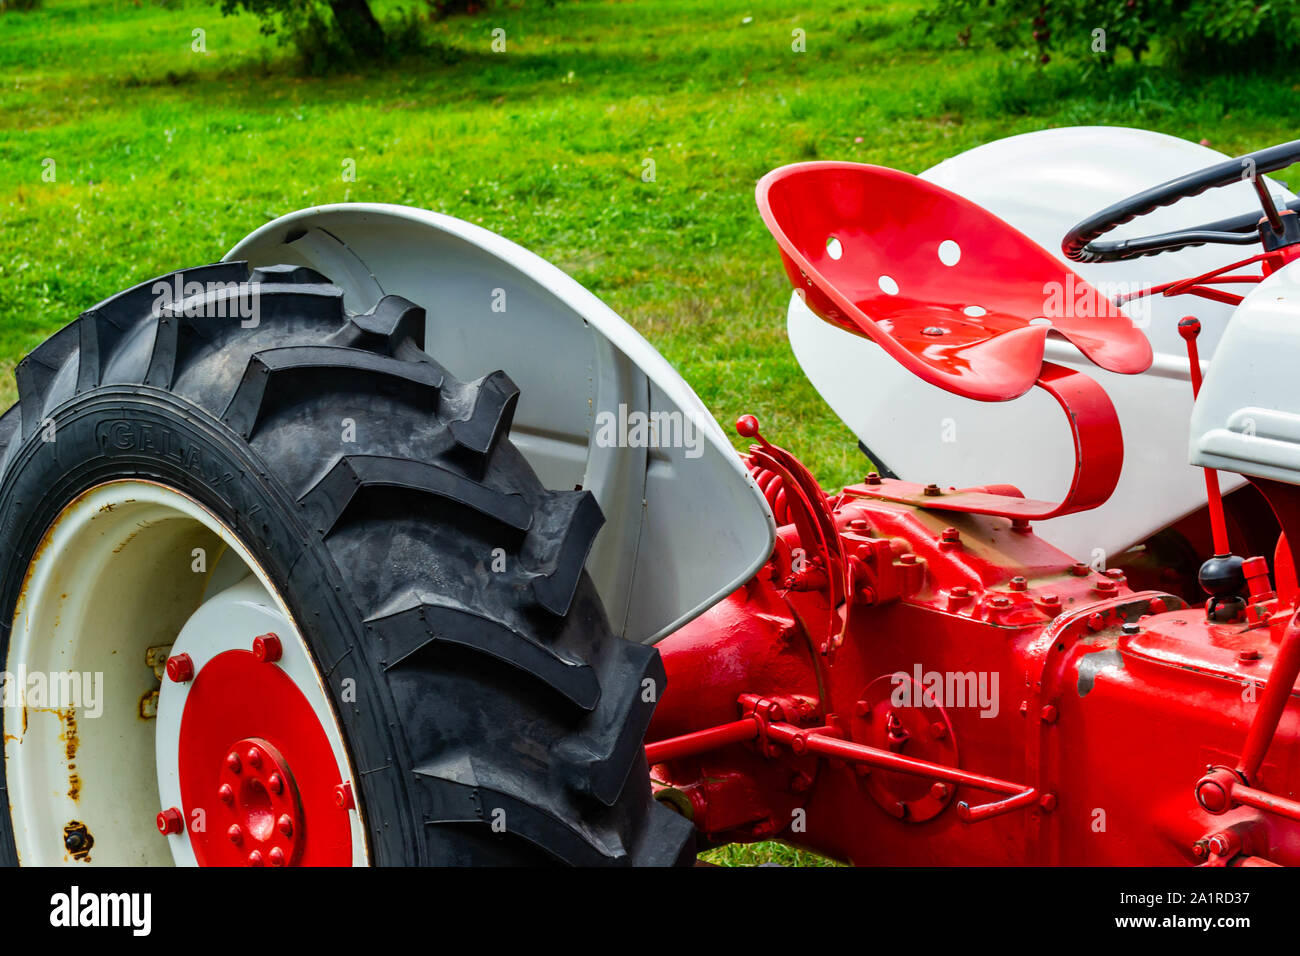 Grau, Mich - 9. September 2019: Eine frisch lackierte Antiken roten Traktor auf grünem Gras Stockfoto